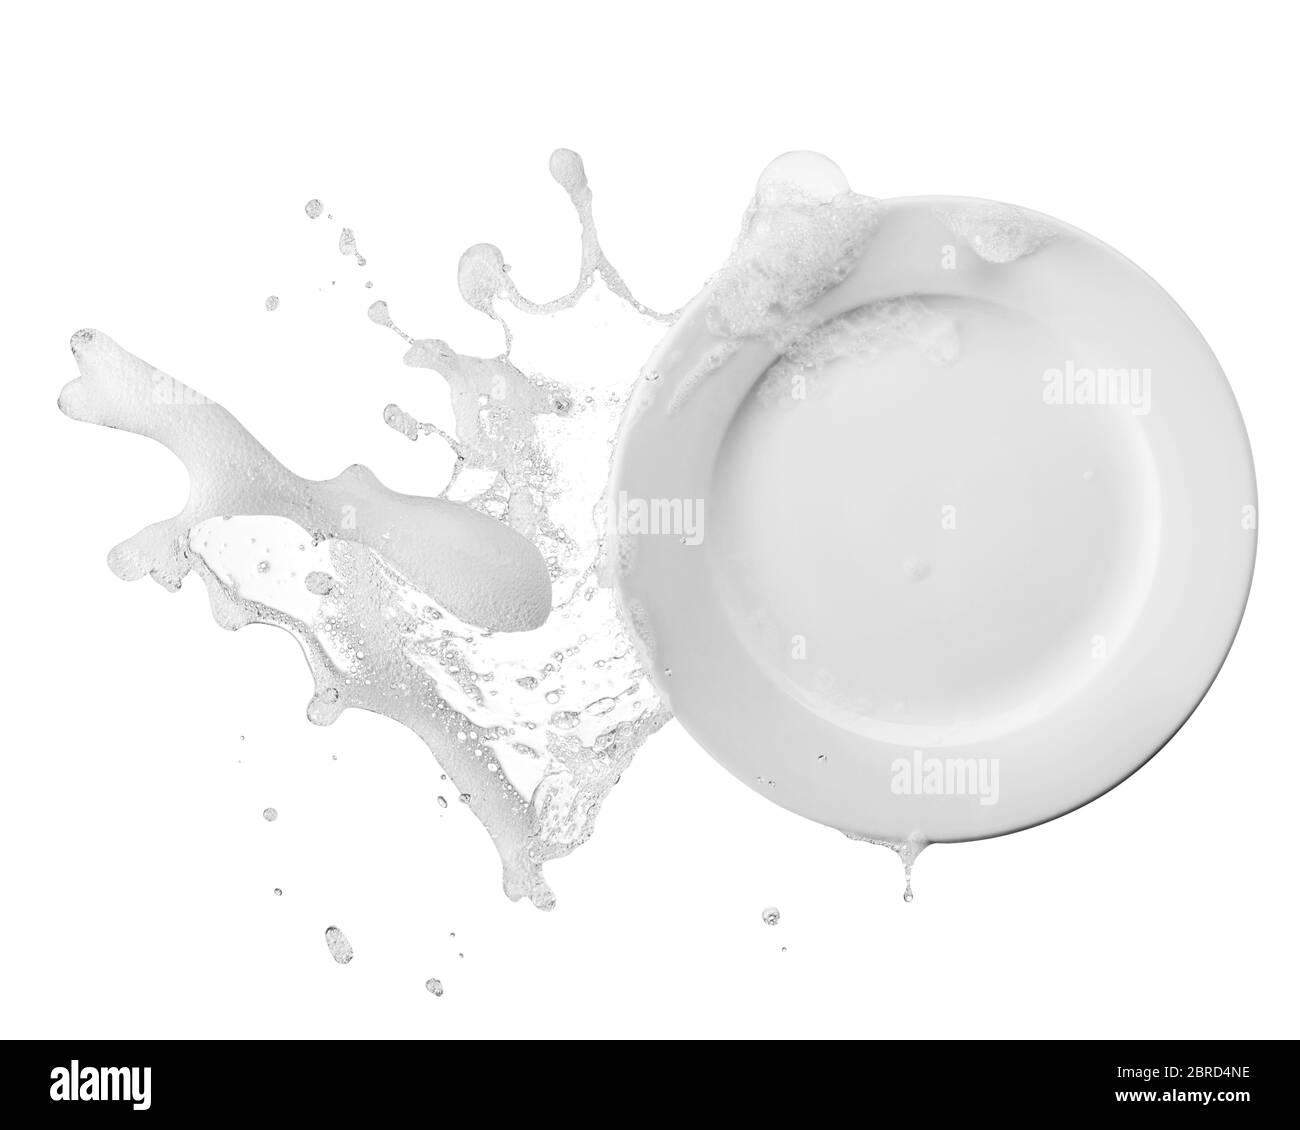 eau contenant du savon et des bulles sur l'assiette Banque D'Images